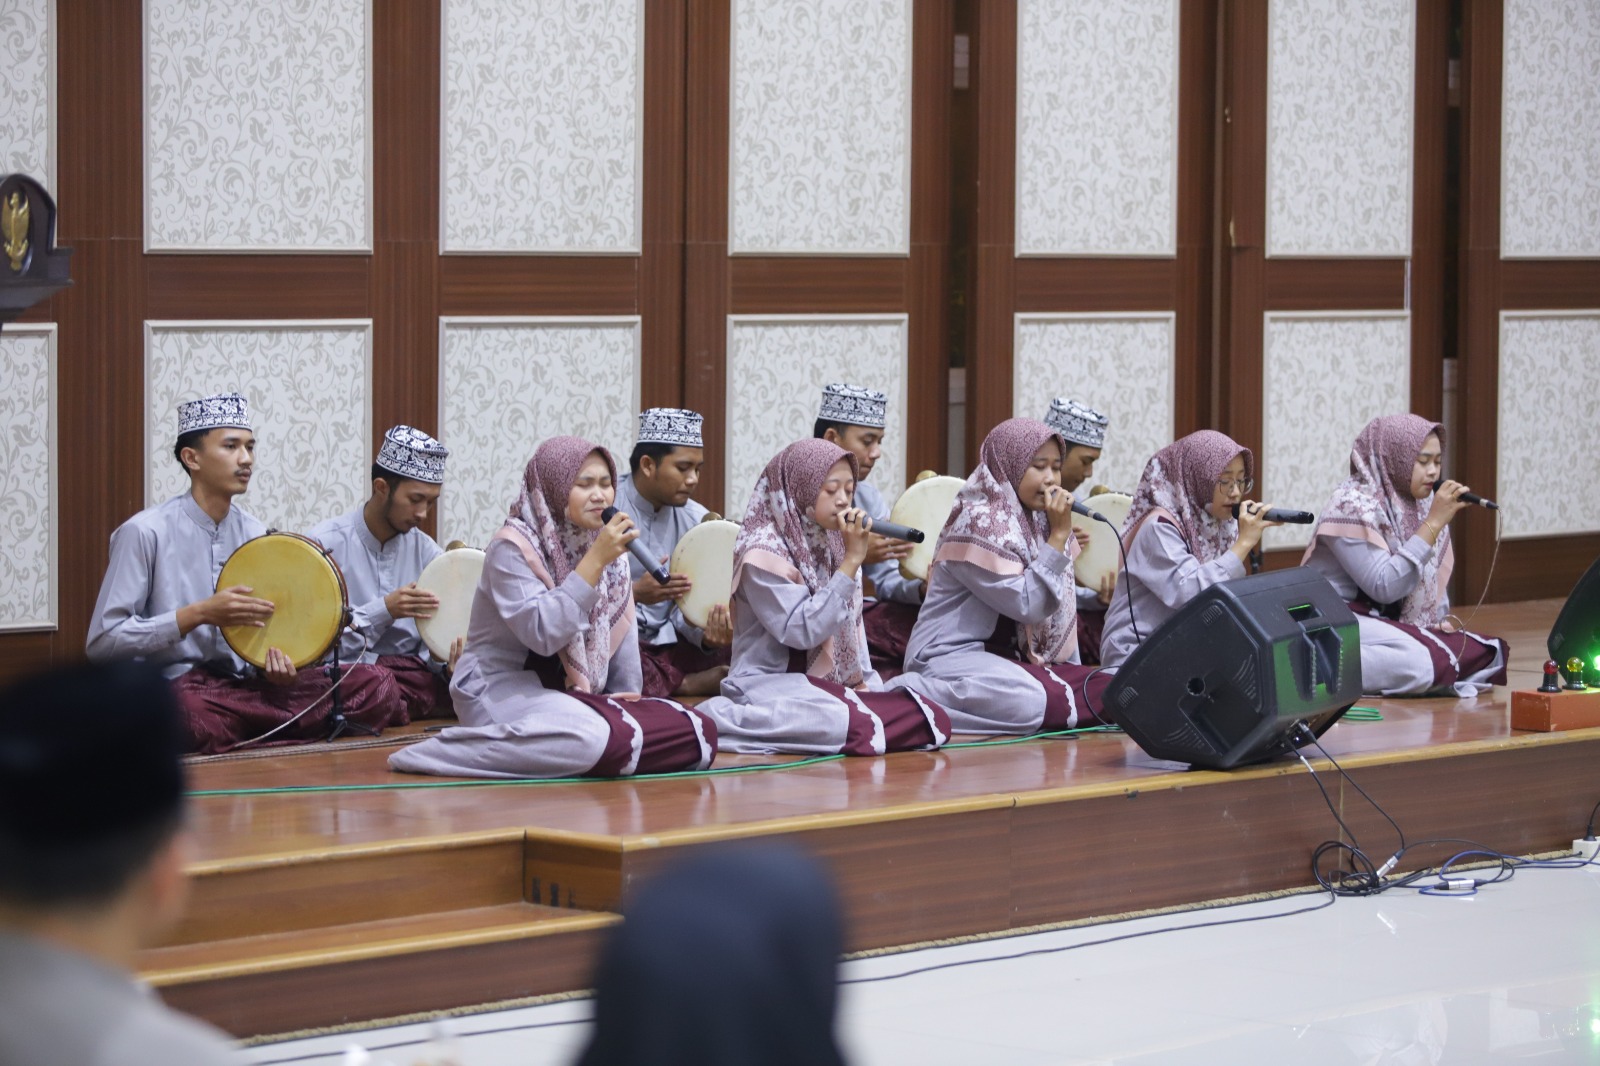 Festival Musik Islami Al-Banjari, Meriahkan Momen Ramadan Lebih Berwarna